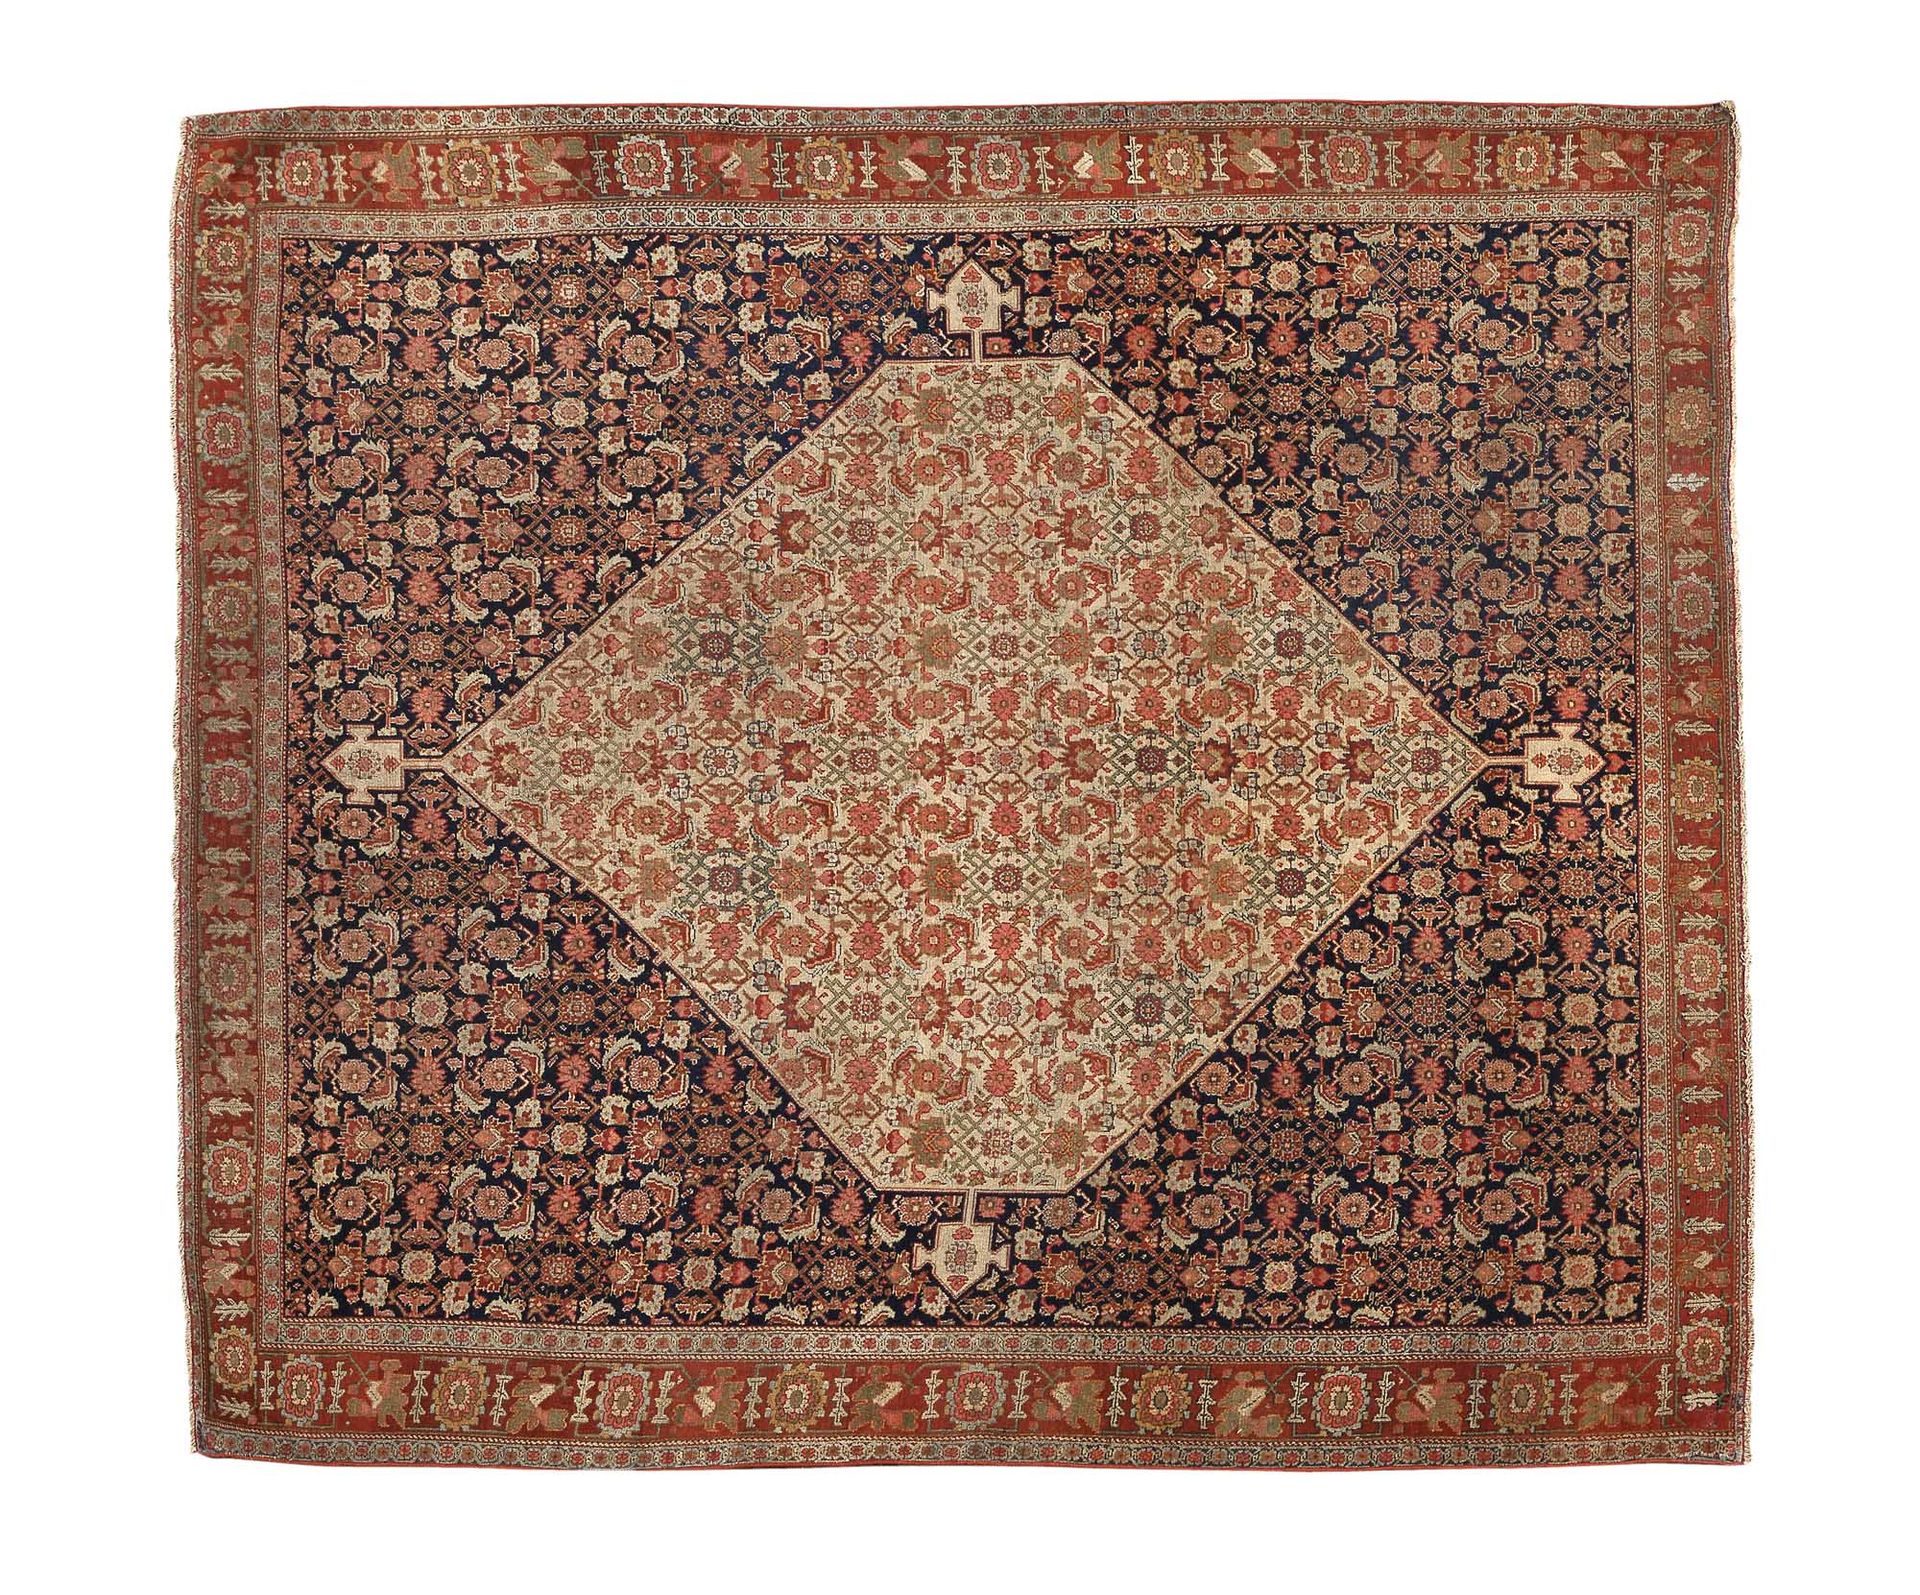 Null Bel tappeto SENNEH (Persia), fine del 19° secolo

Dimensione: 180 x 155cm

&hellip;